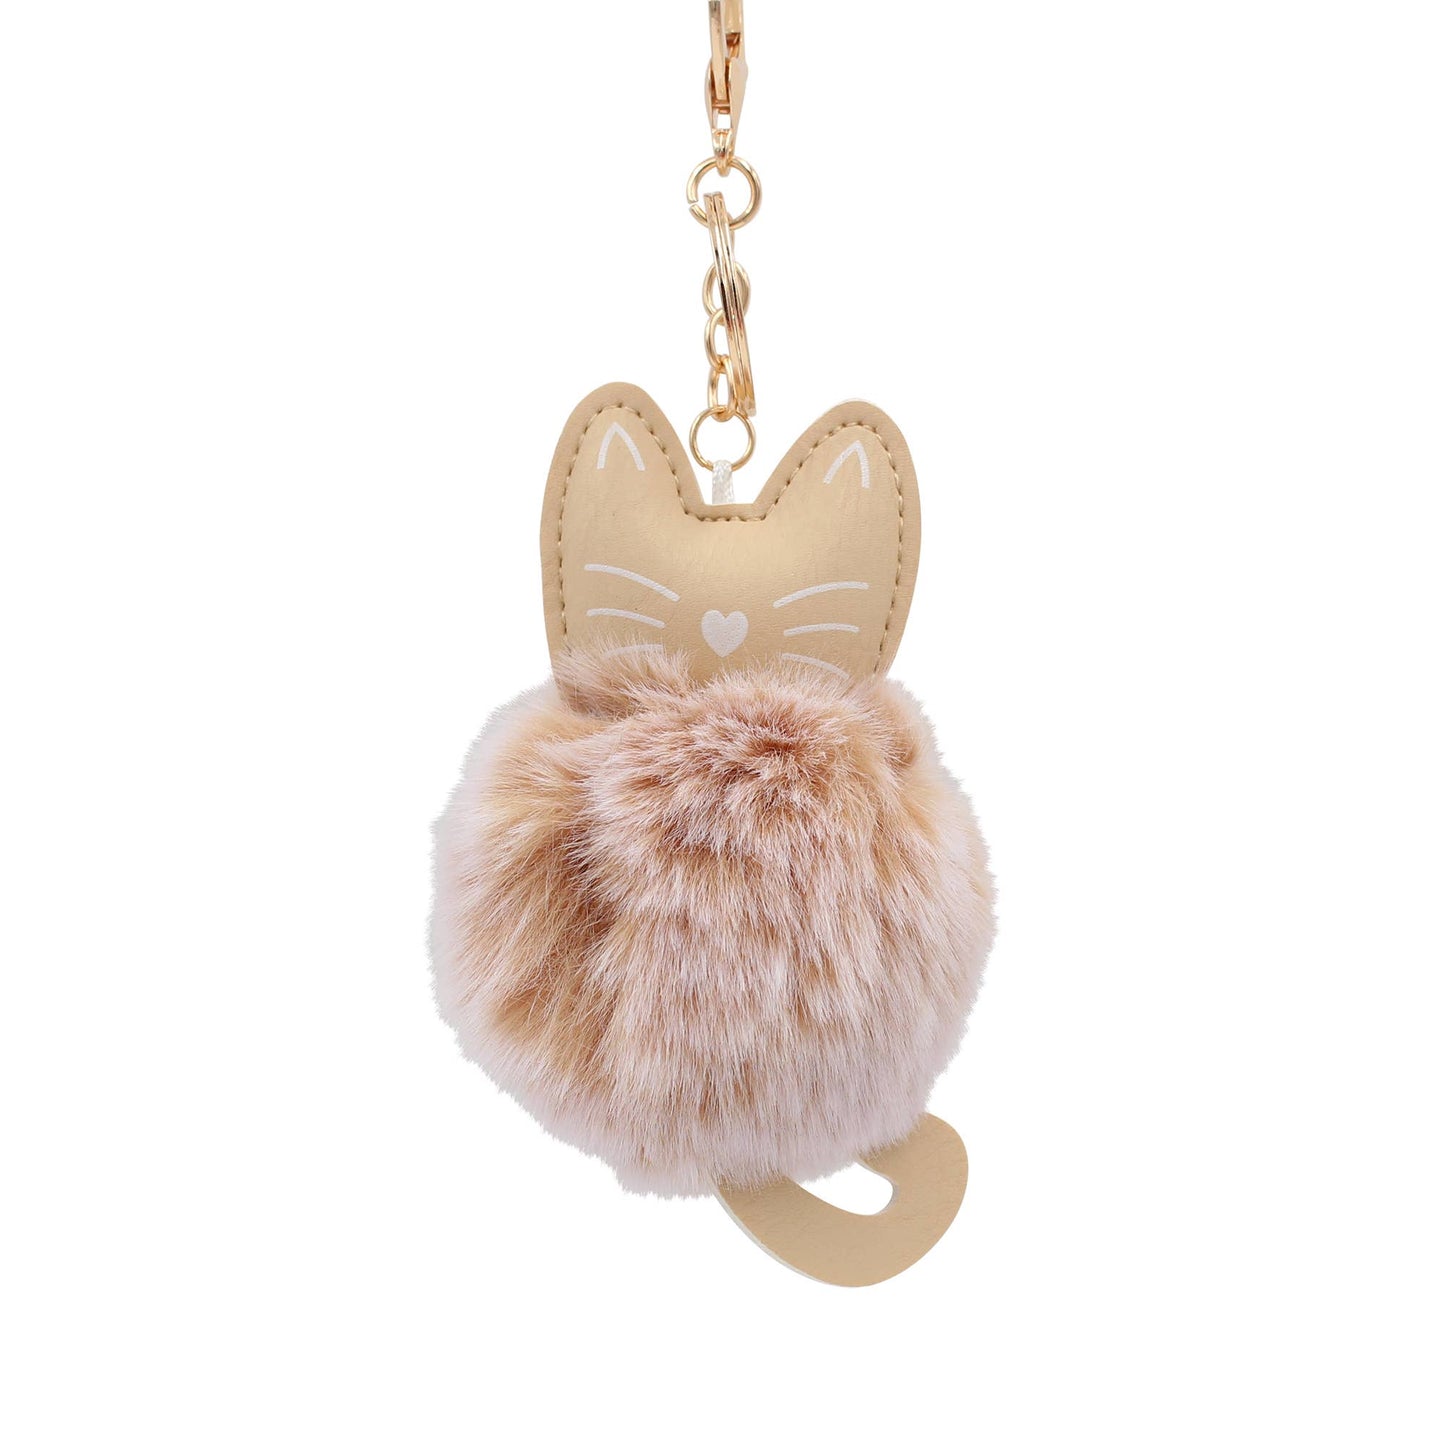 Image of Real Sic Beige Fuzzy Cute Animal Cat - Kitty Pom Pom Charm Key chain